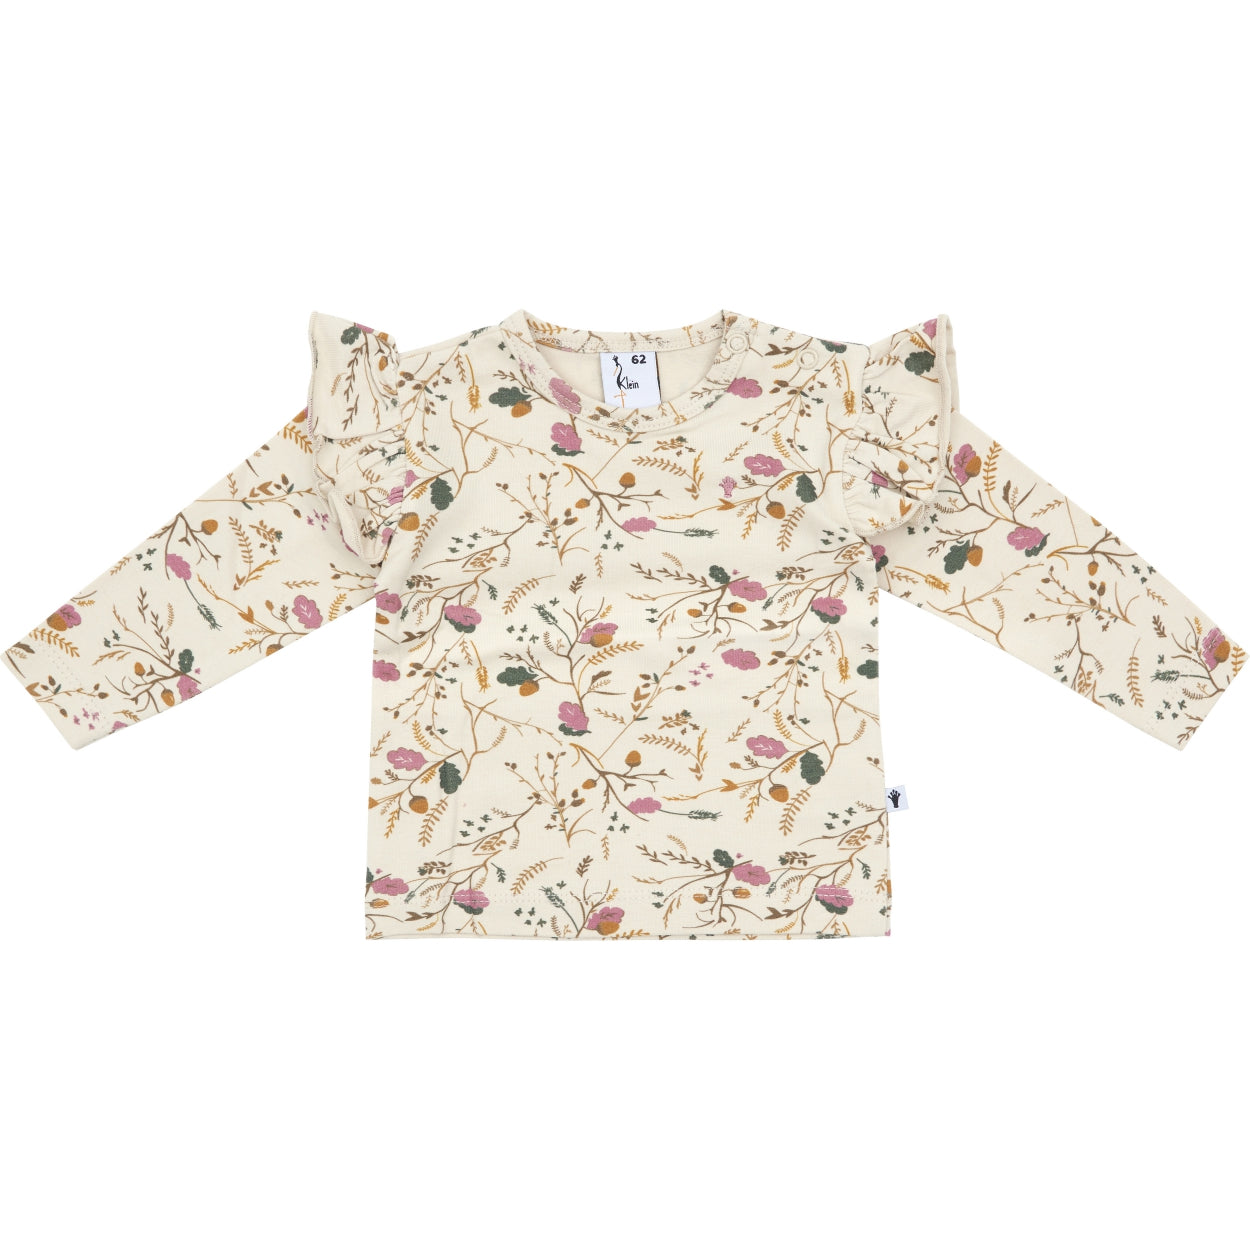 Meisjes Shirt Ruffle van Klein Baby in de kleur AOP Flower/Acorn in maat 86.